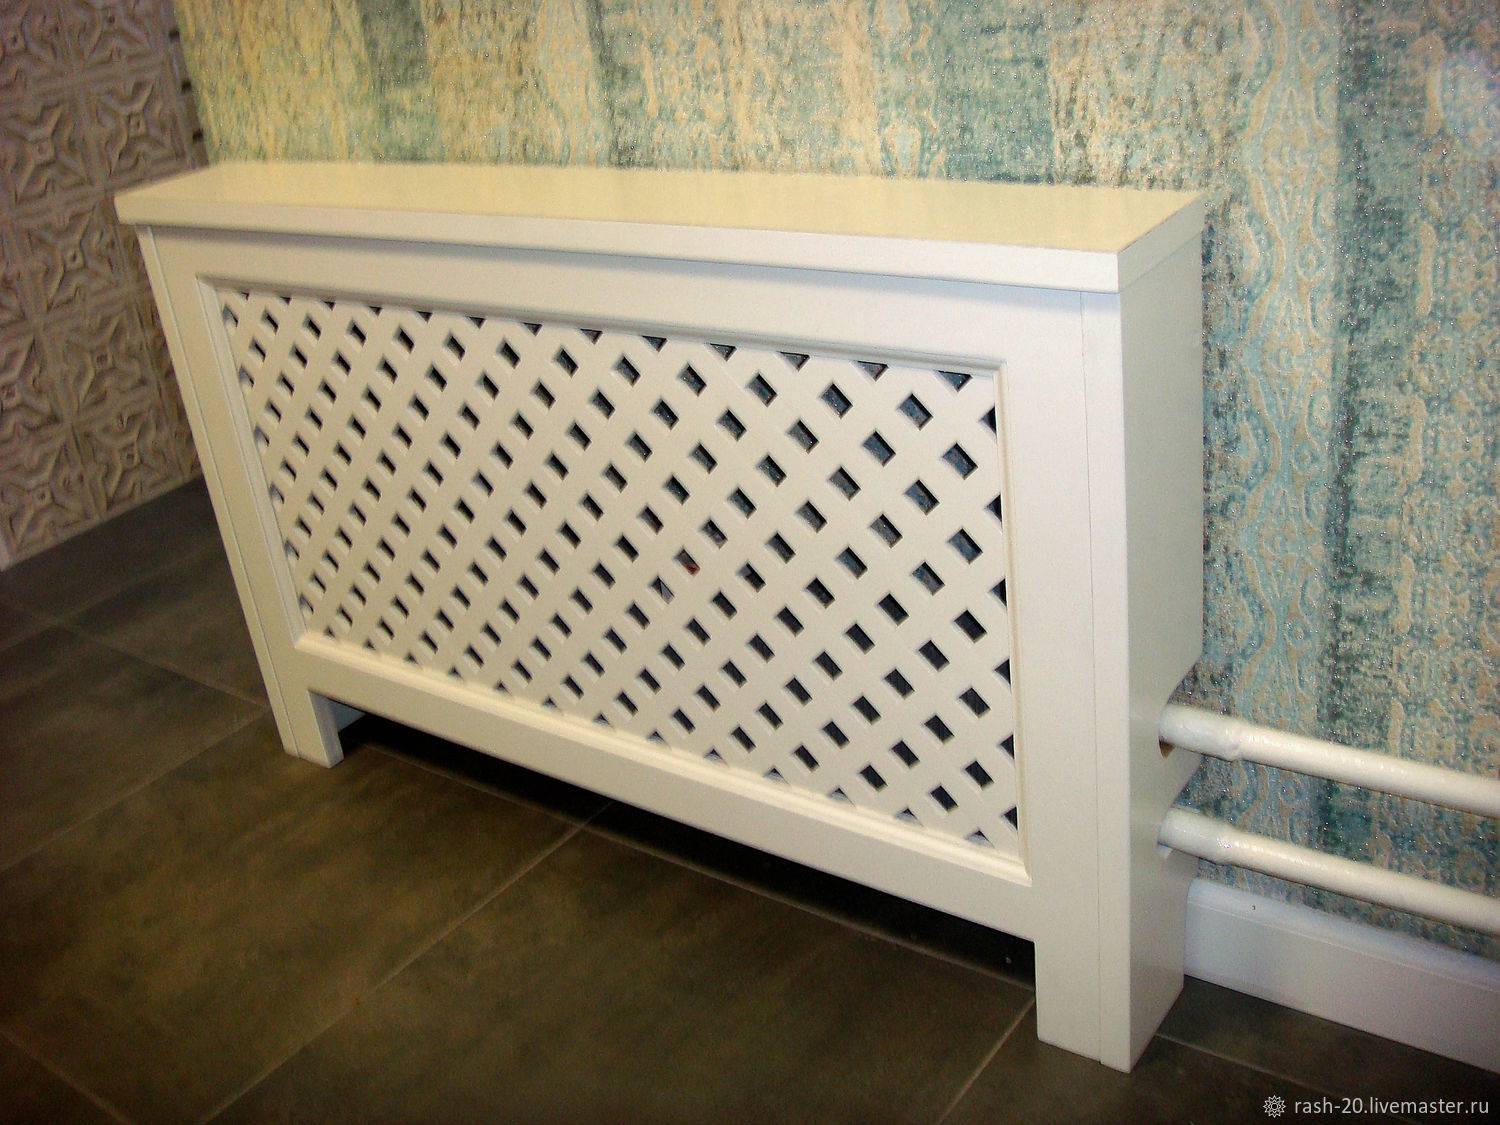 Декоративные решетки на радиаторы отопления